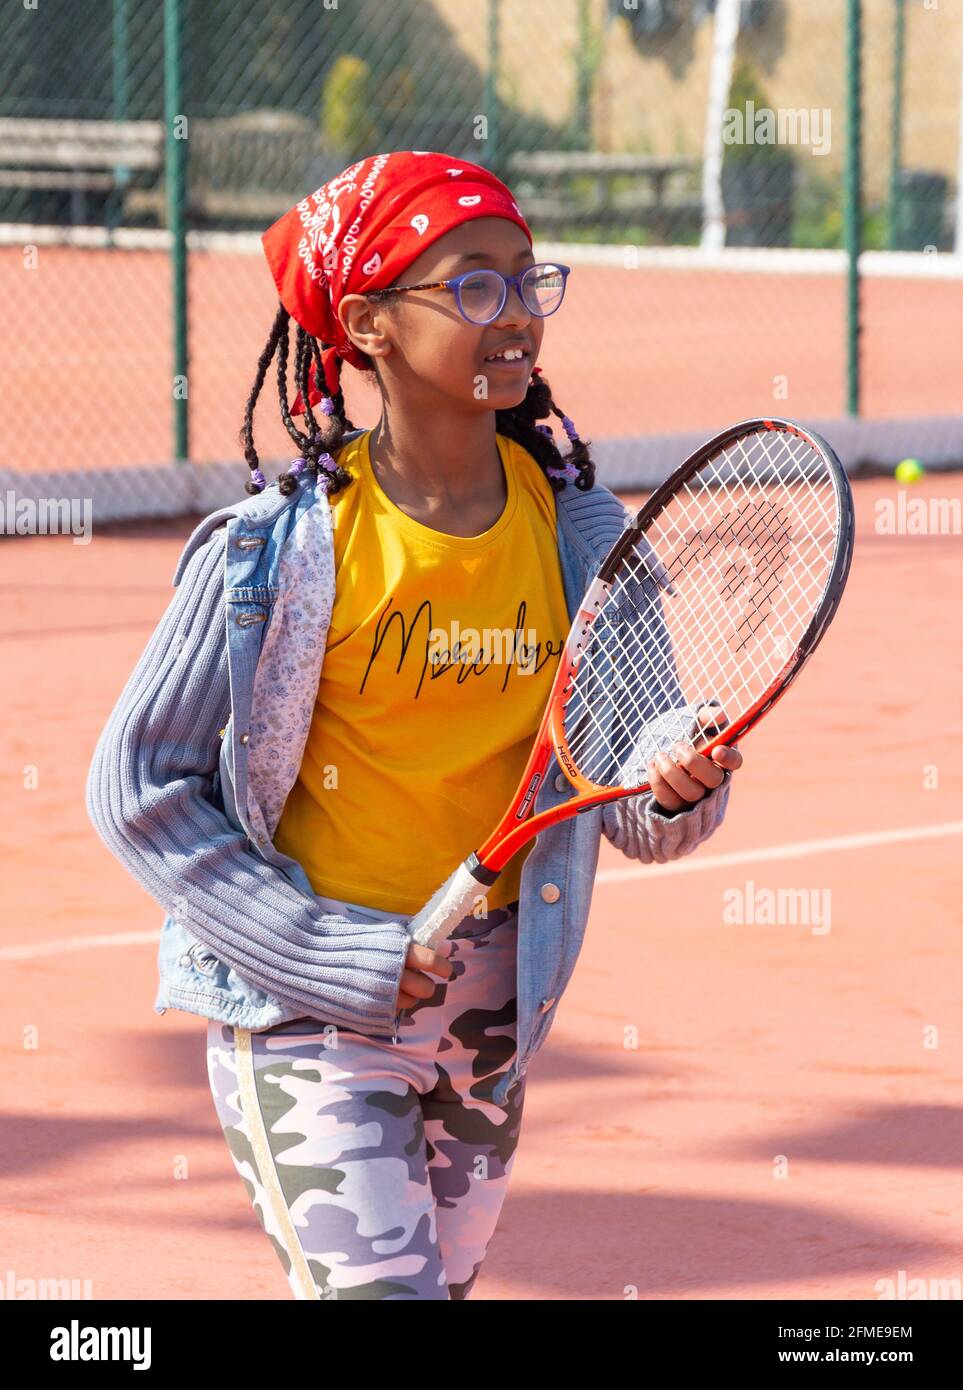 Jeune fille noire jouant au tennis, Surrey, Angleterre, Royaume-Uni Banque D'Images